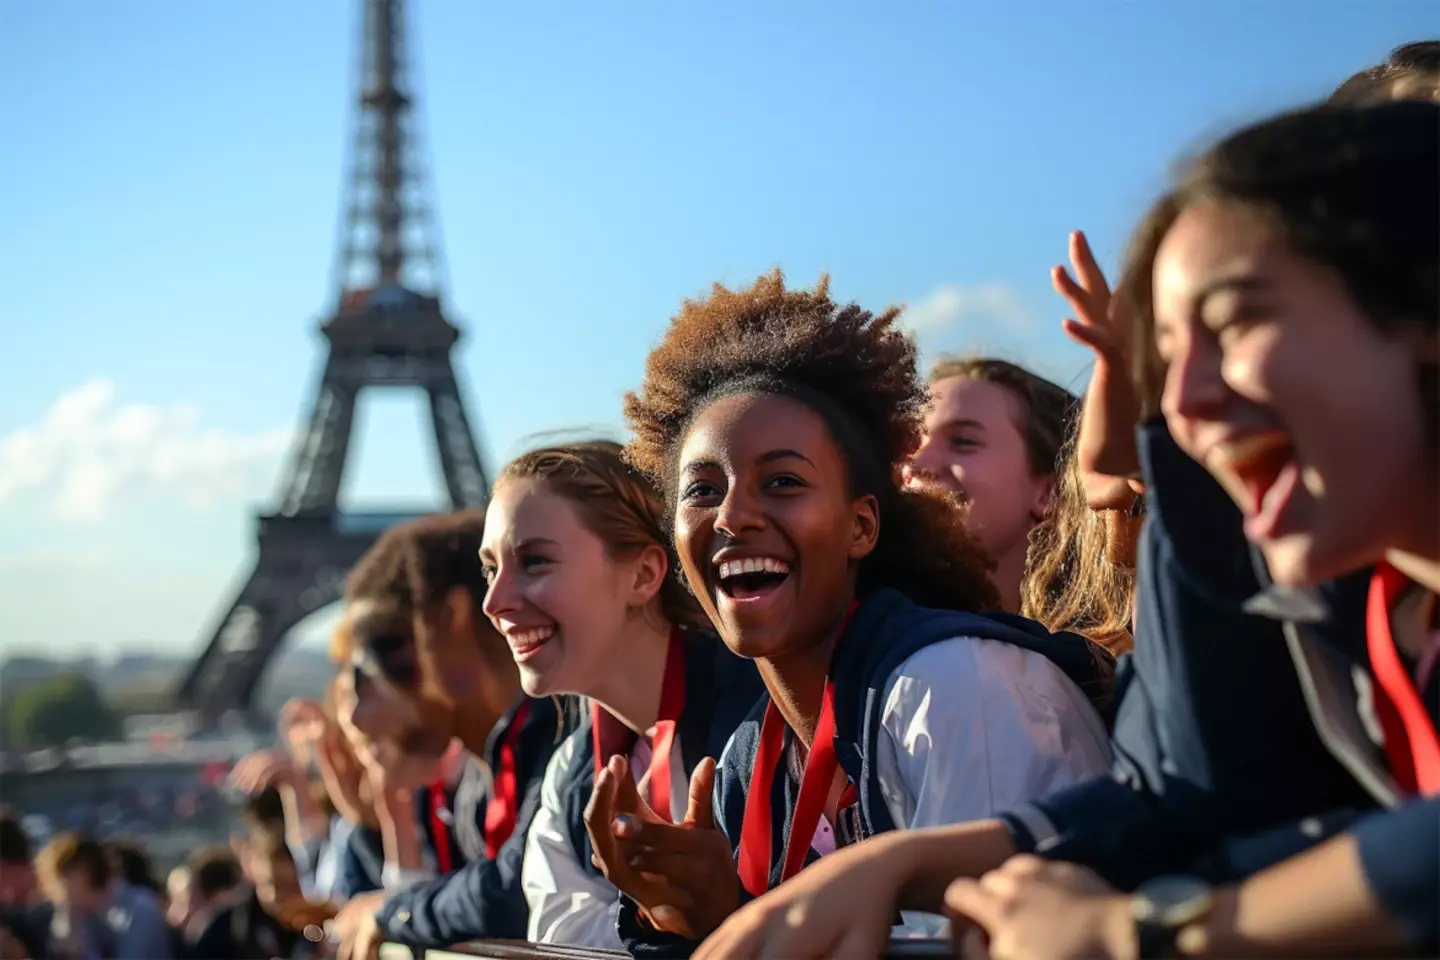 Des supporters enthousiastes acclamant lors d'un événement emblématique, avec la Tour Eiffel en arrière-plan, symbolisant l'excitation autour des grands événements sportifs en France en 2024.